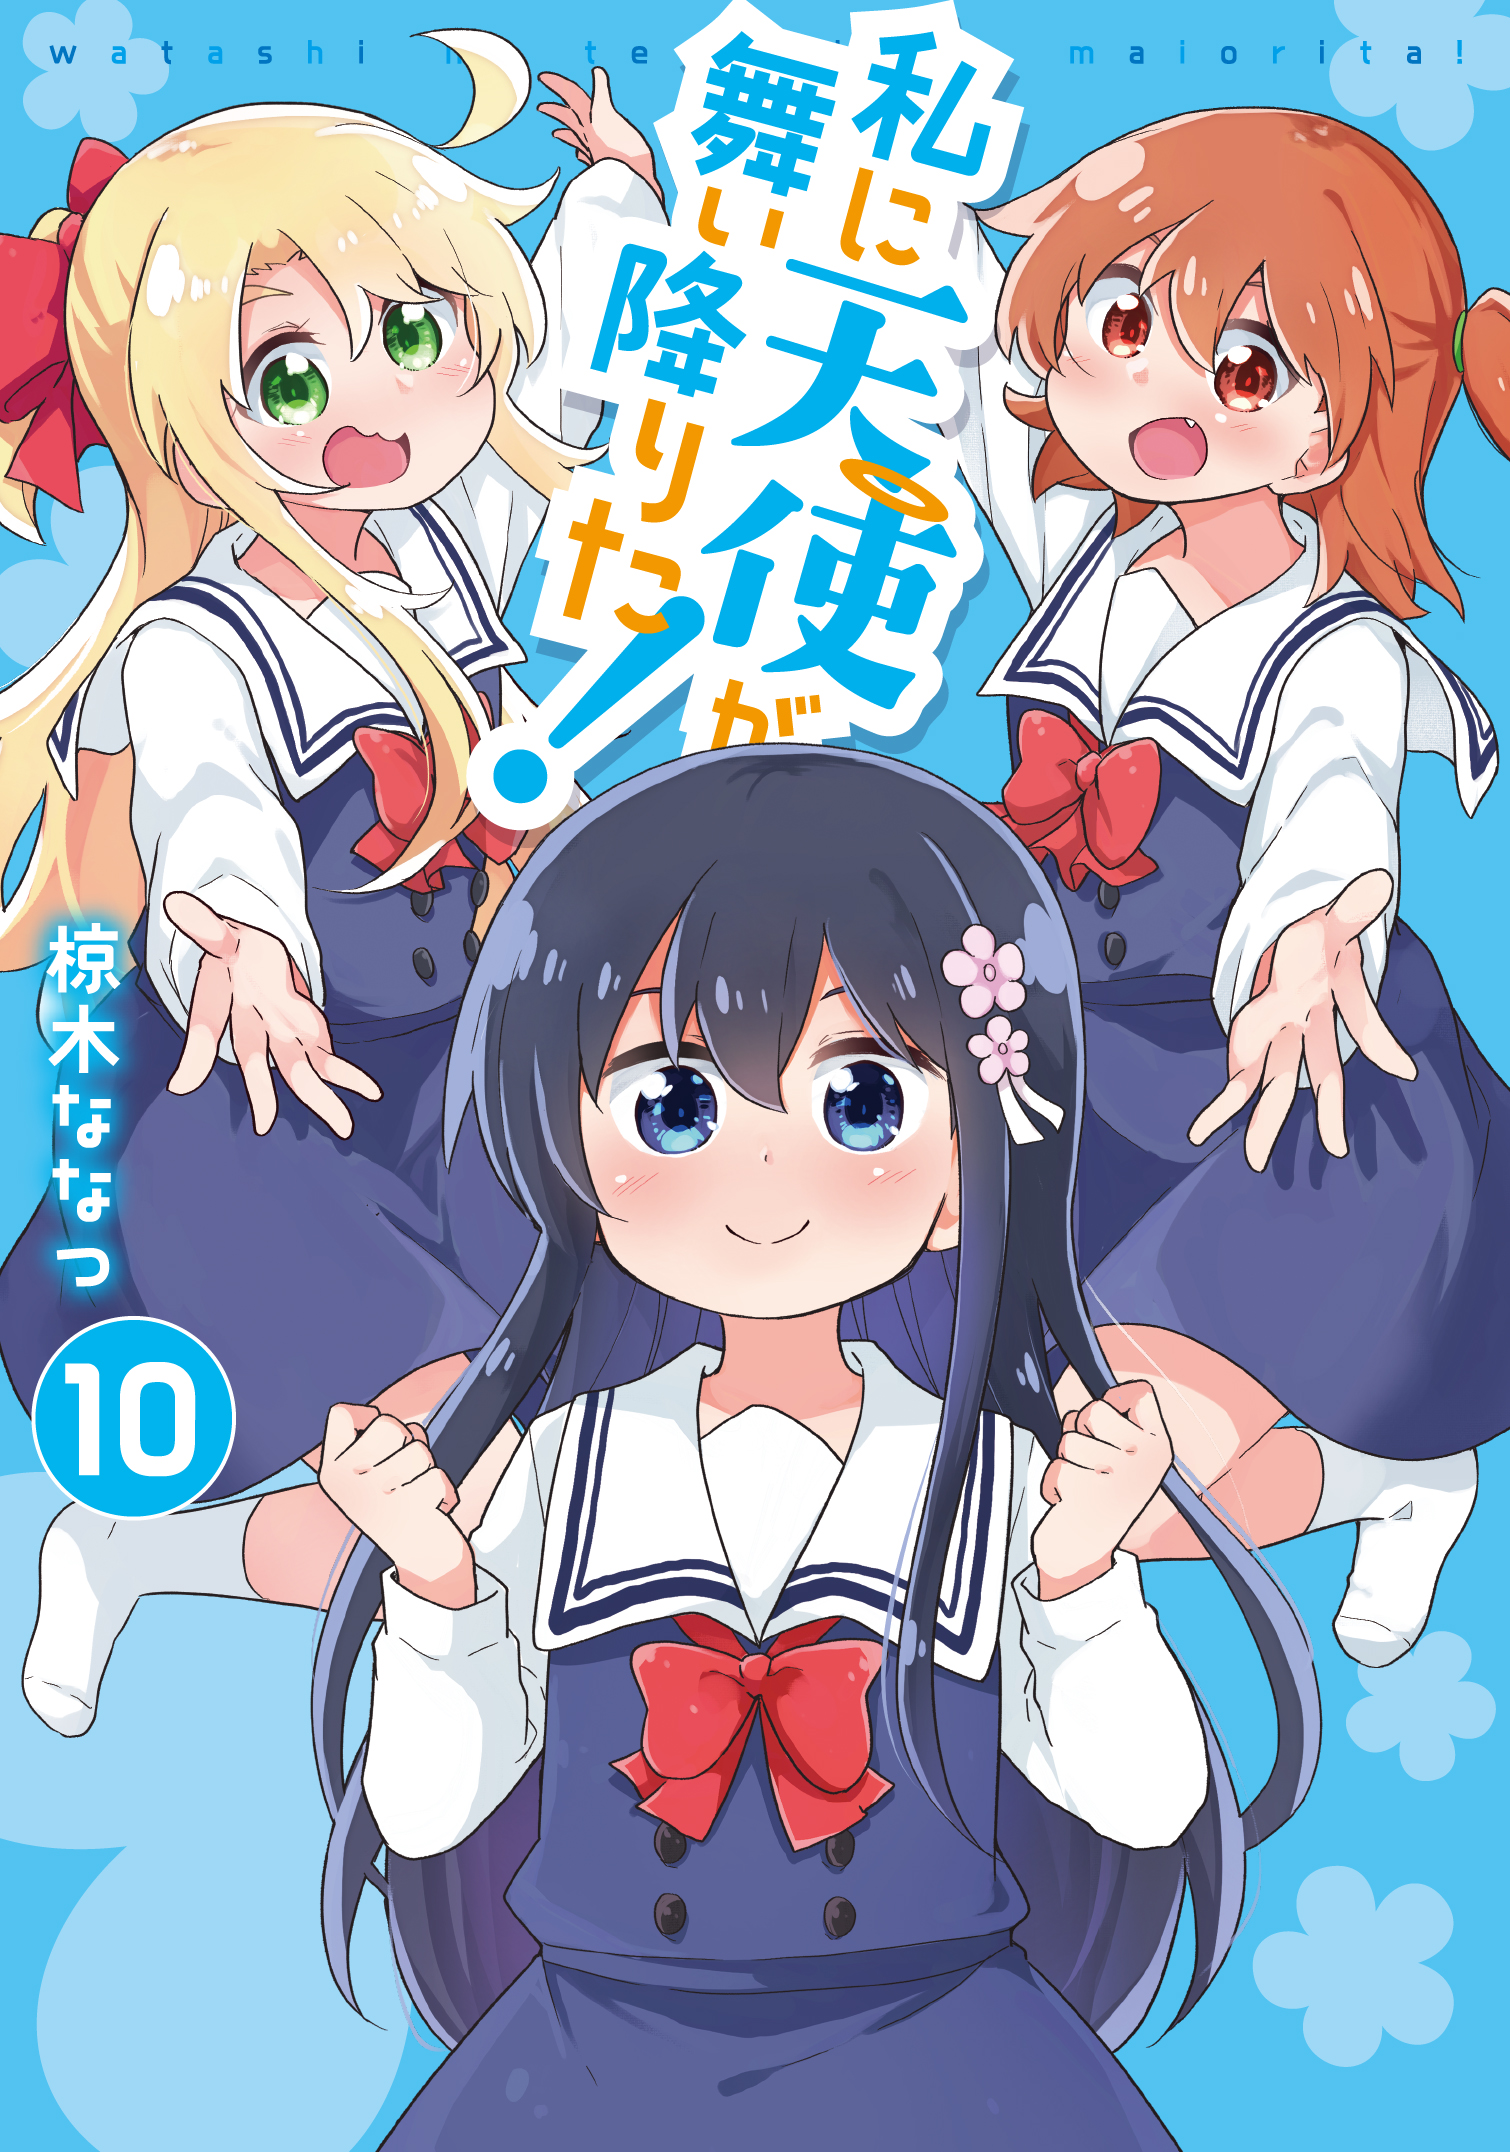 File:Watashi ni Tenshi ga Maiorita02 6.jpg - Anime Bath Scene Wiki